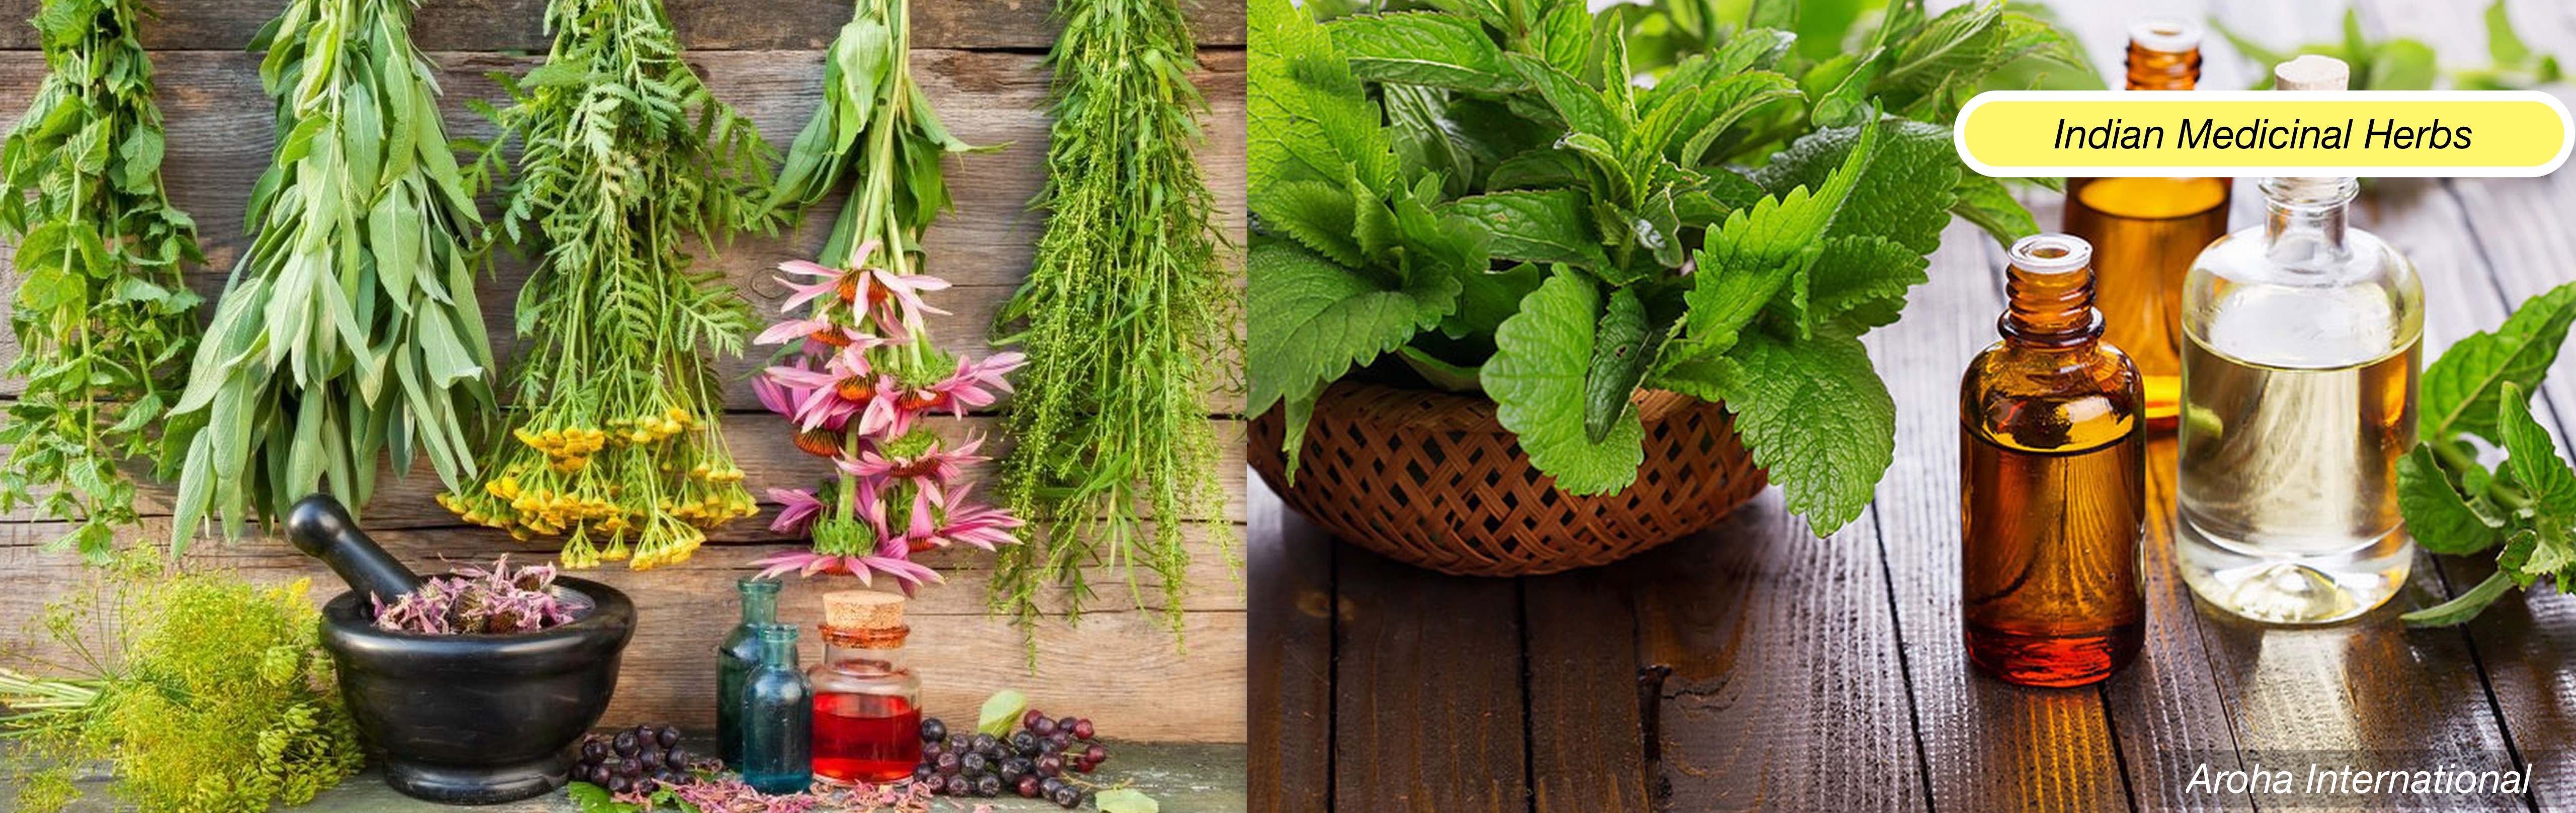 Indian Medicinal Herbs